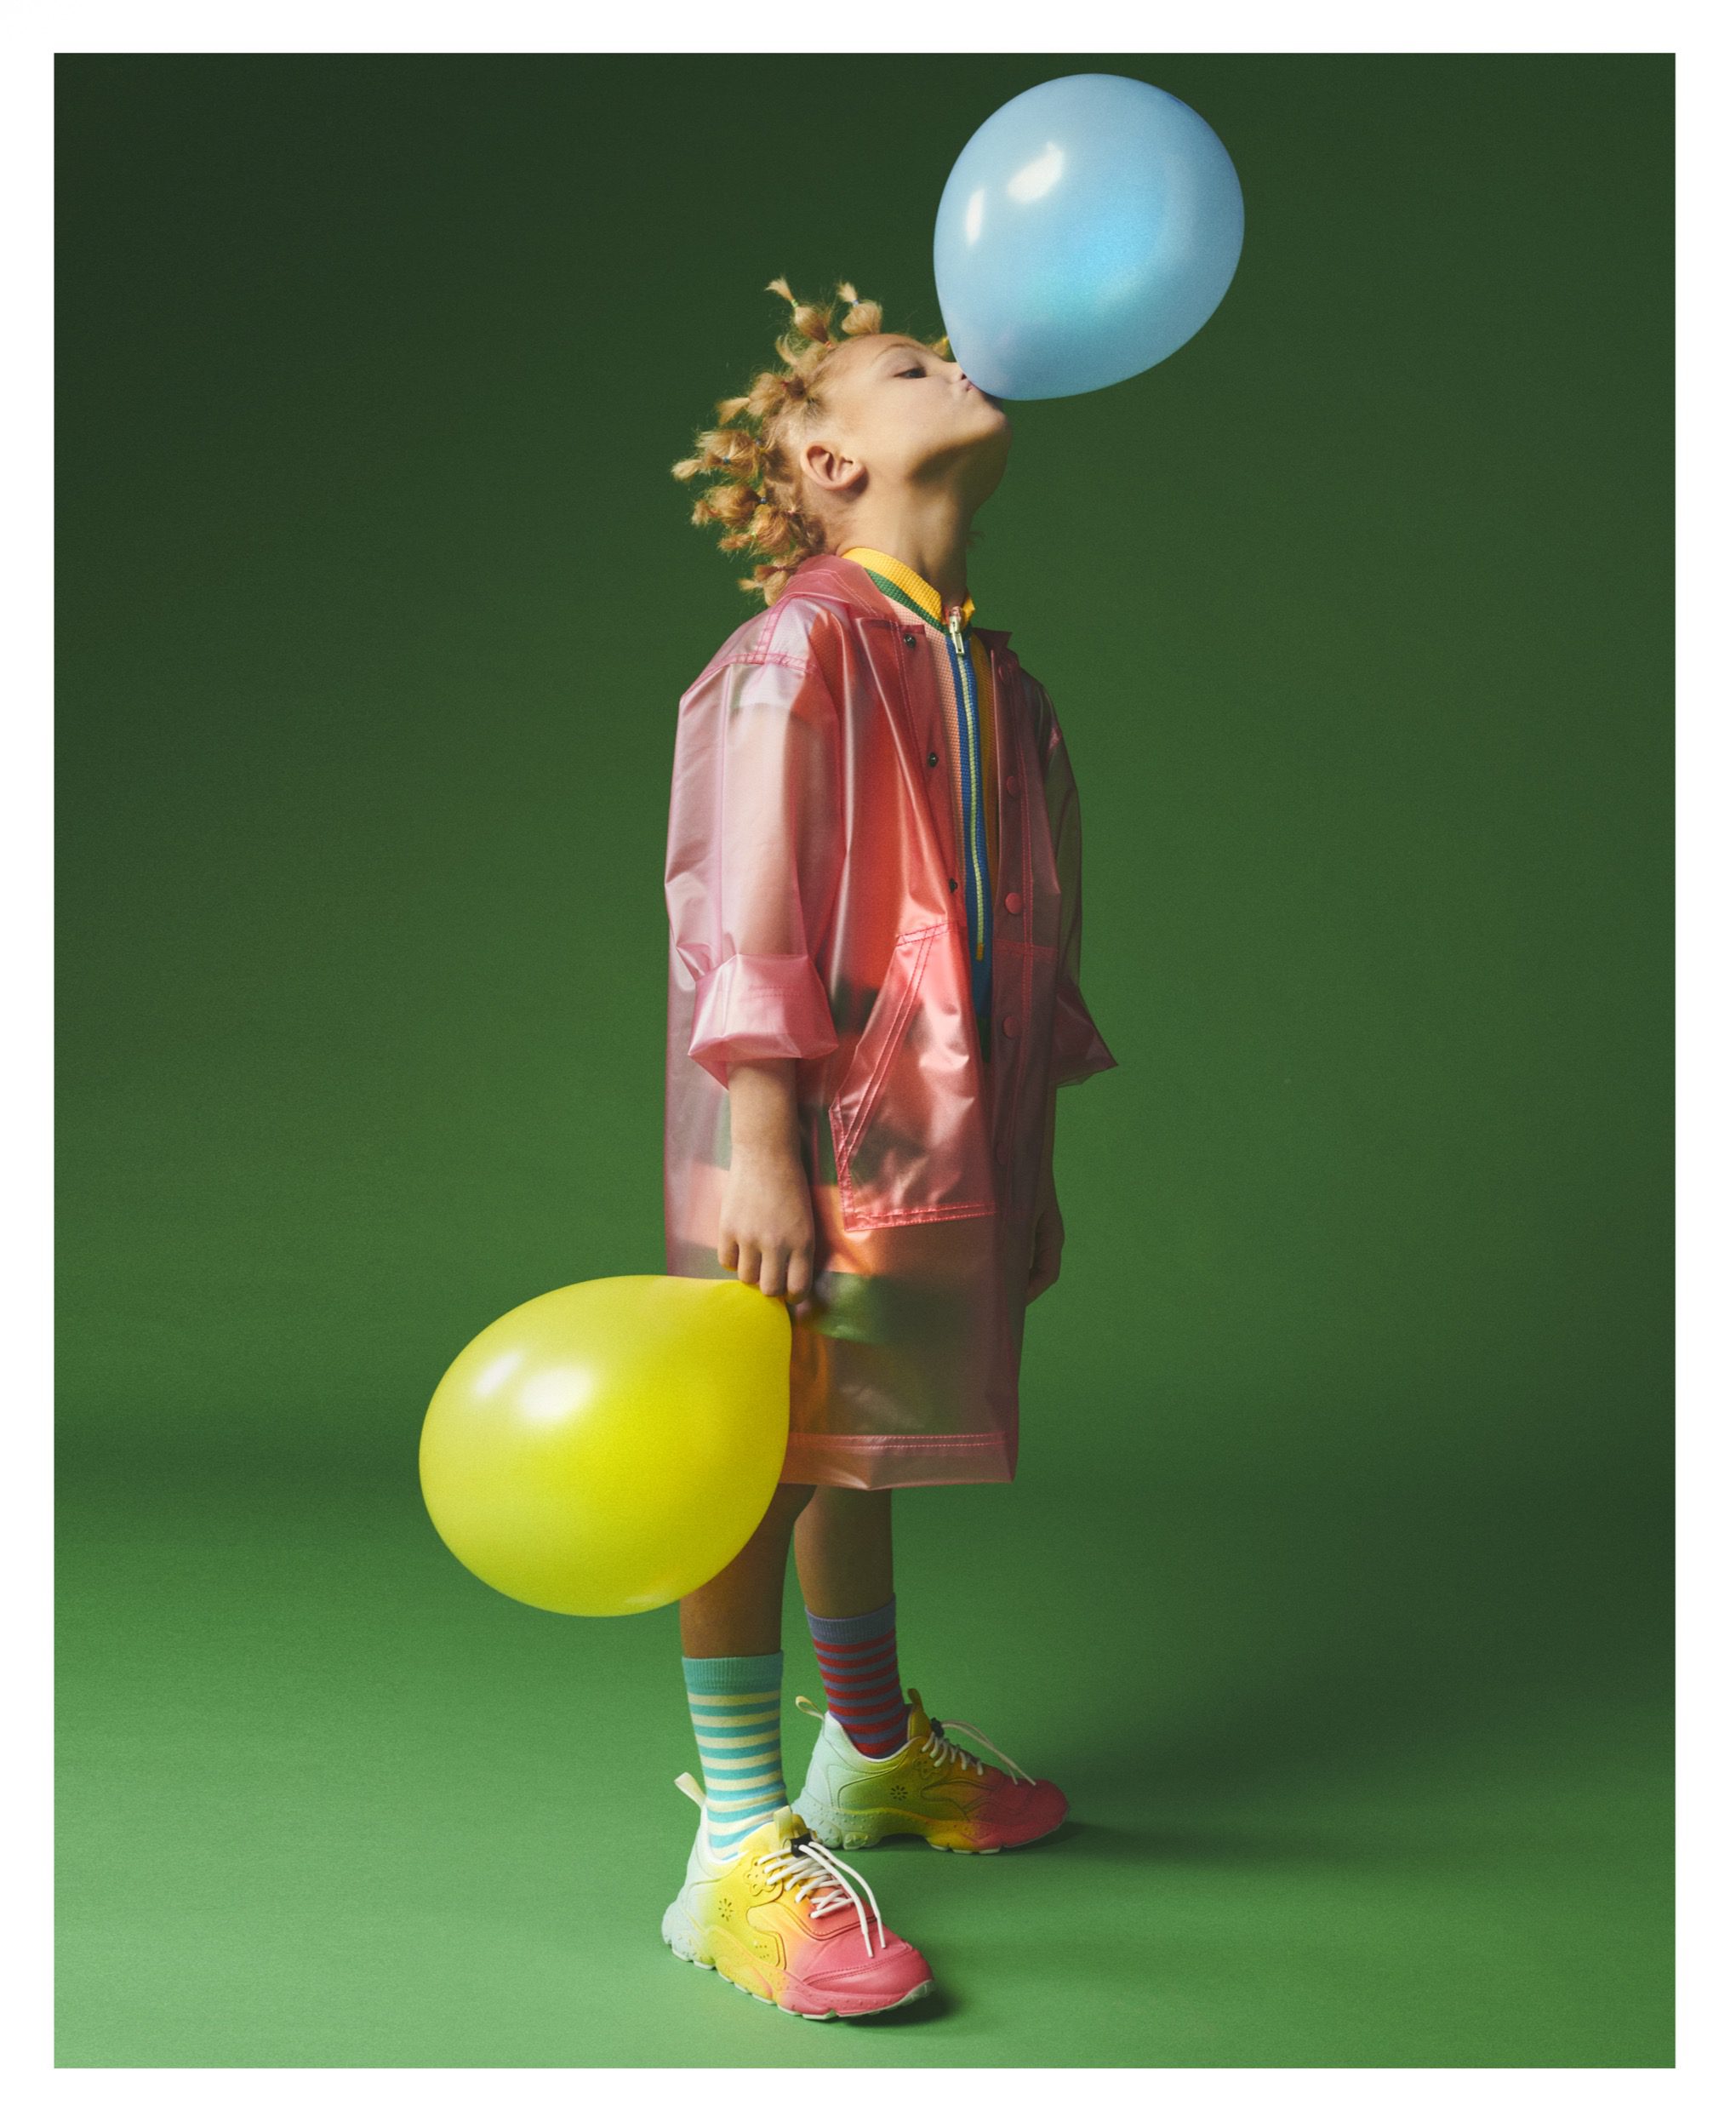 kathrin-hohberg-style-piccolo-balloon-art-rocco-bizzarri-05